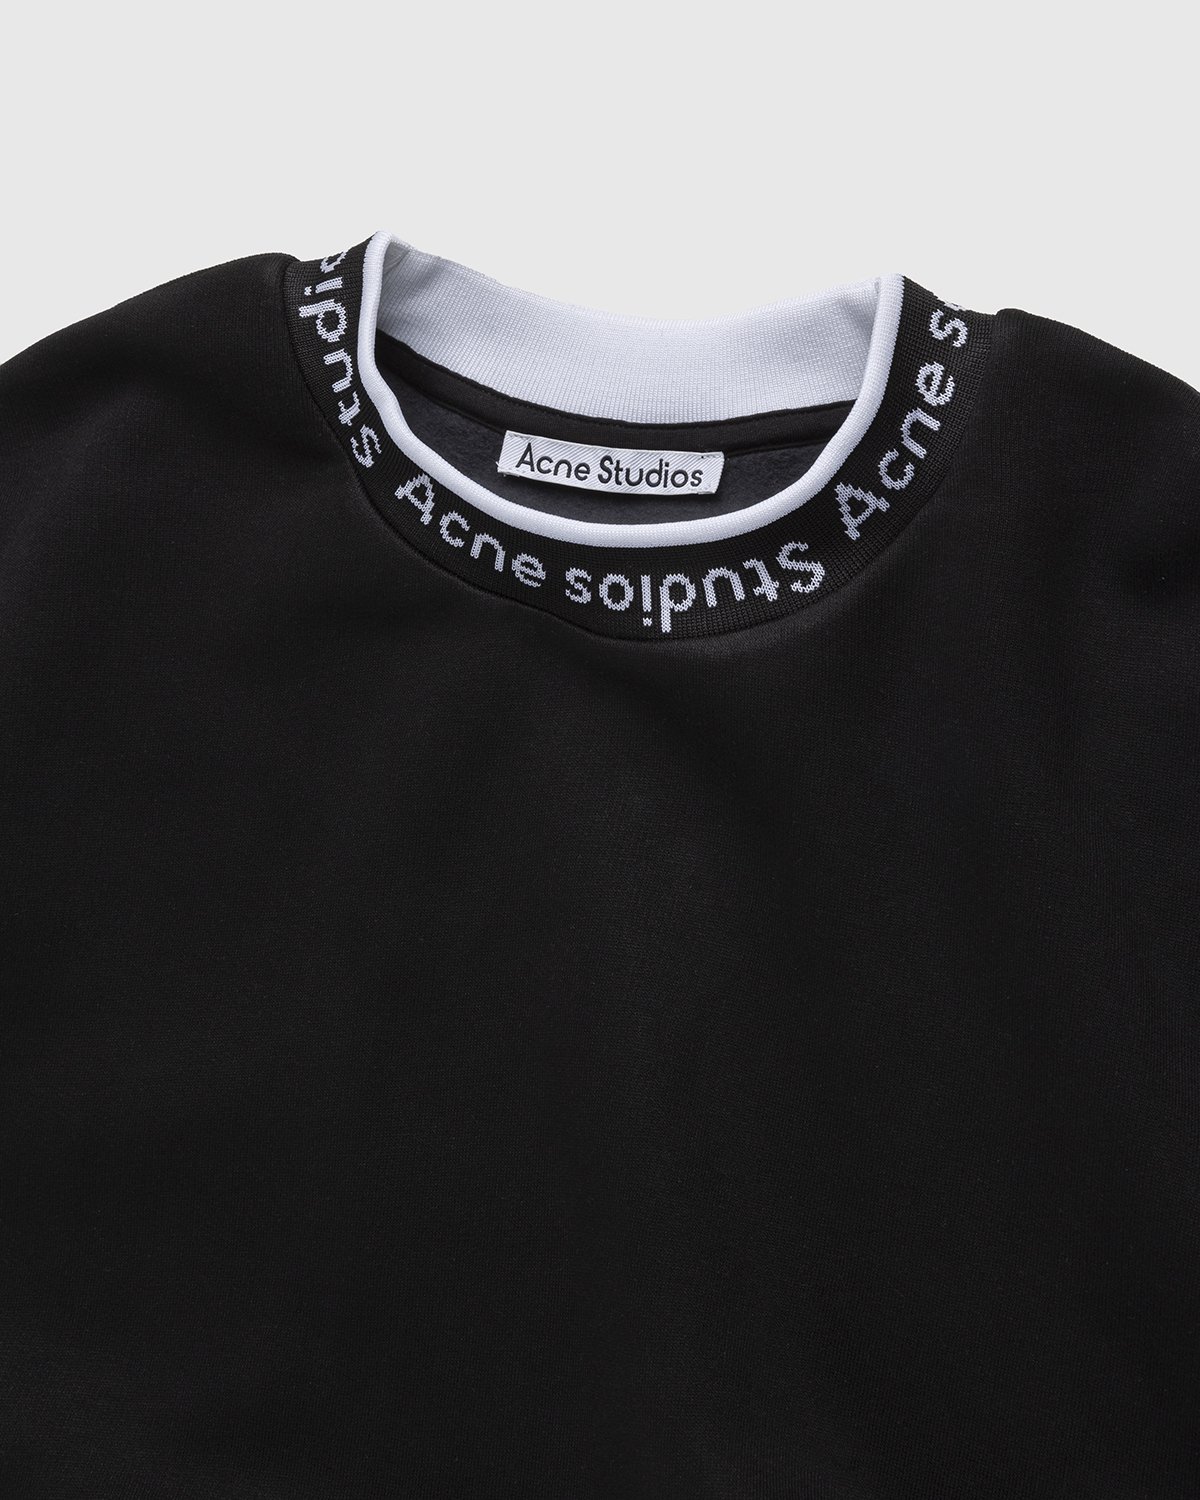 Acne Studios - Logo Rib Sweatshirt Black - Clothing - Black - Image 3